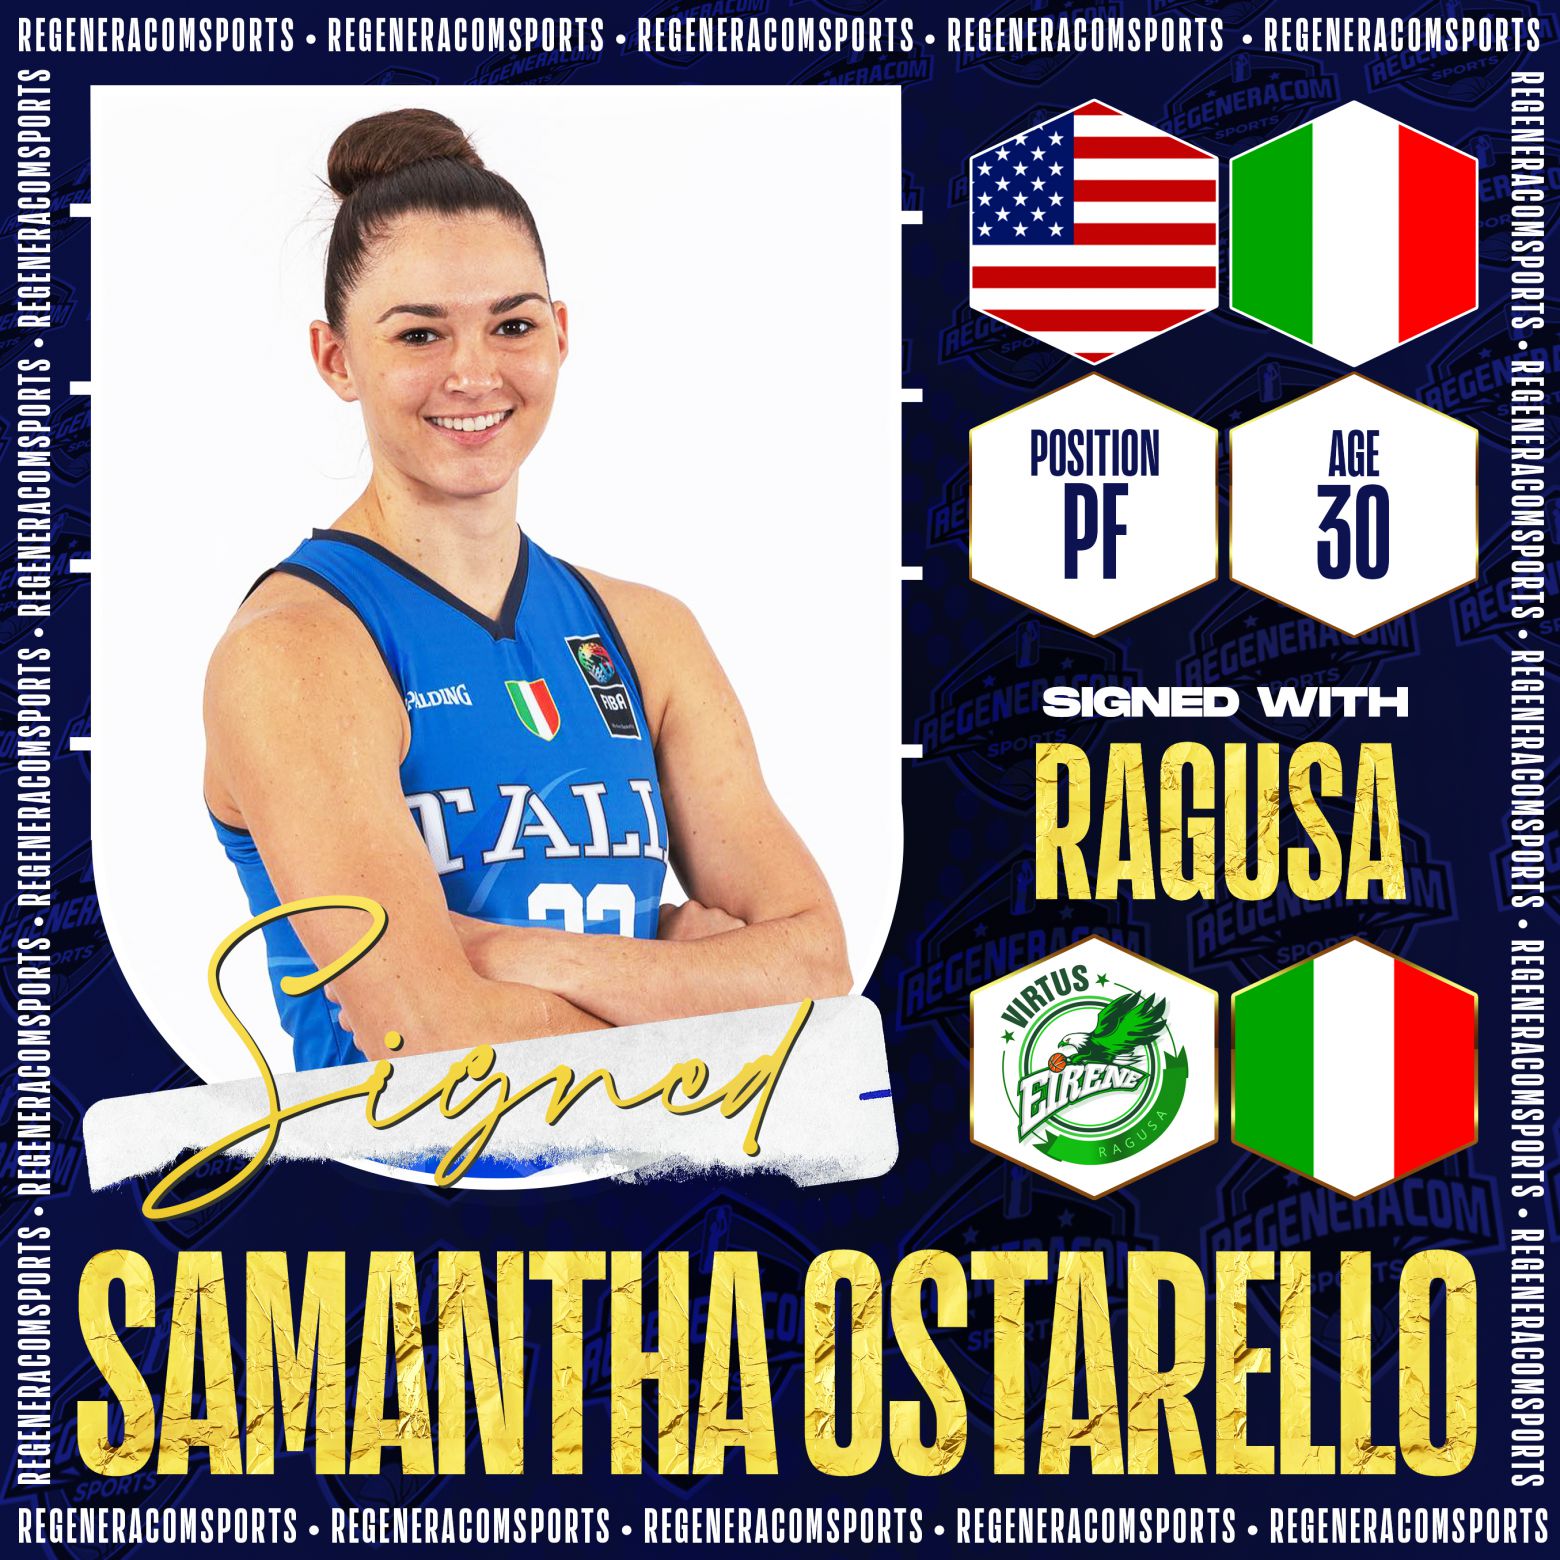 SAMANTHA OSTARELLO seguirá en Ragusa durante la temporada 2022/23